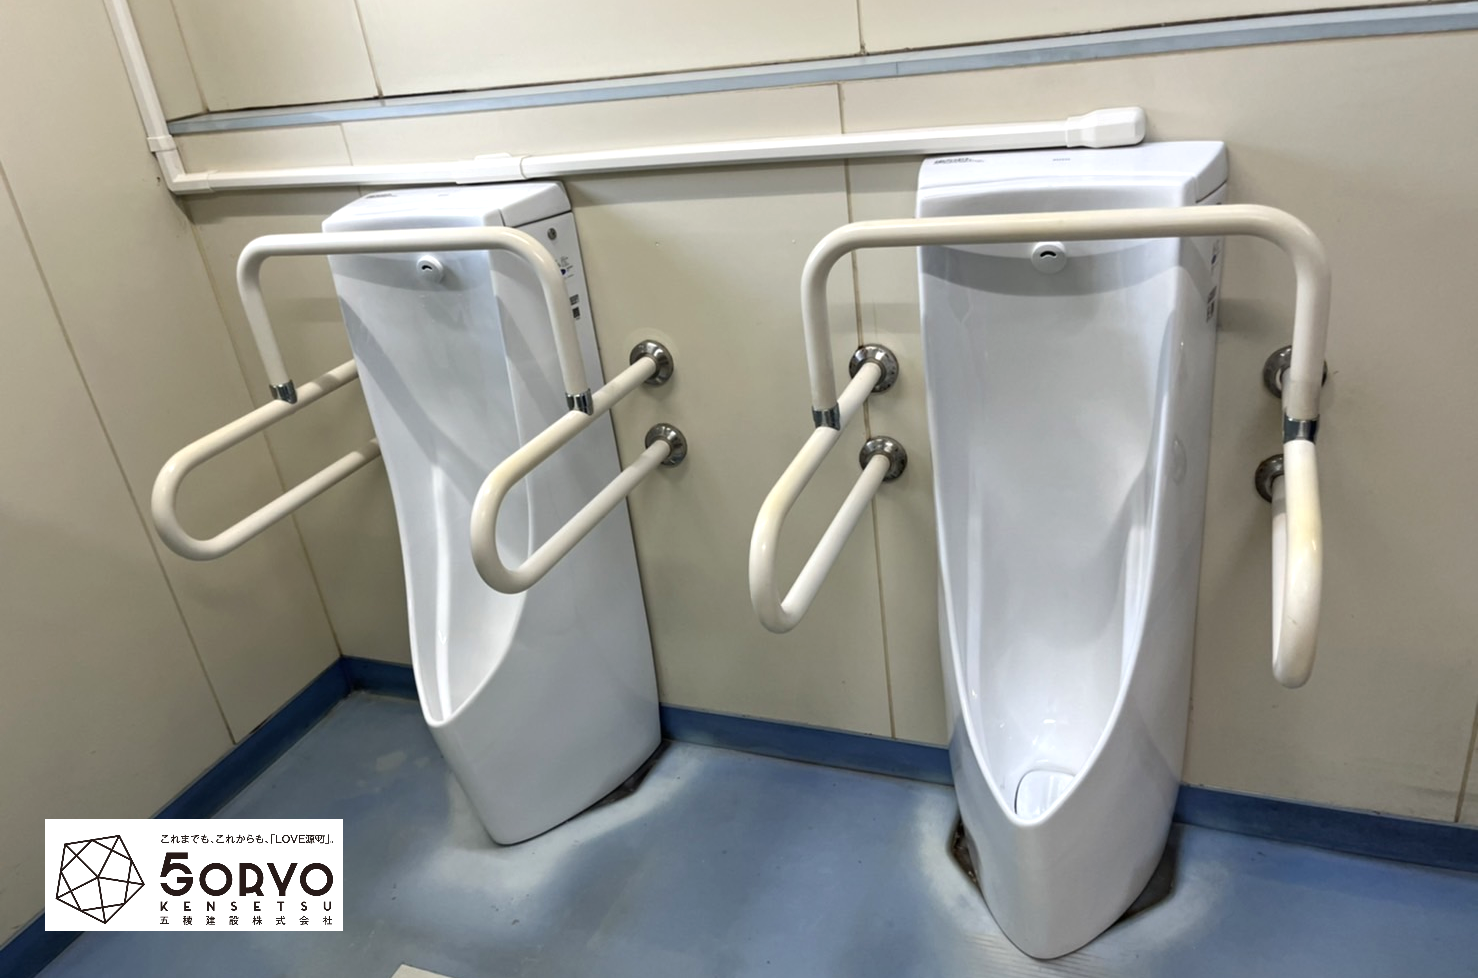 千葉県東金市 施設内・男子トイレ小便器の交換リフォーム：施工後